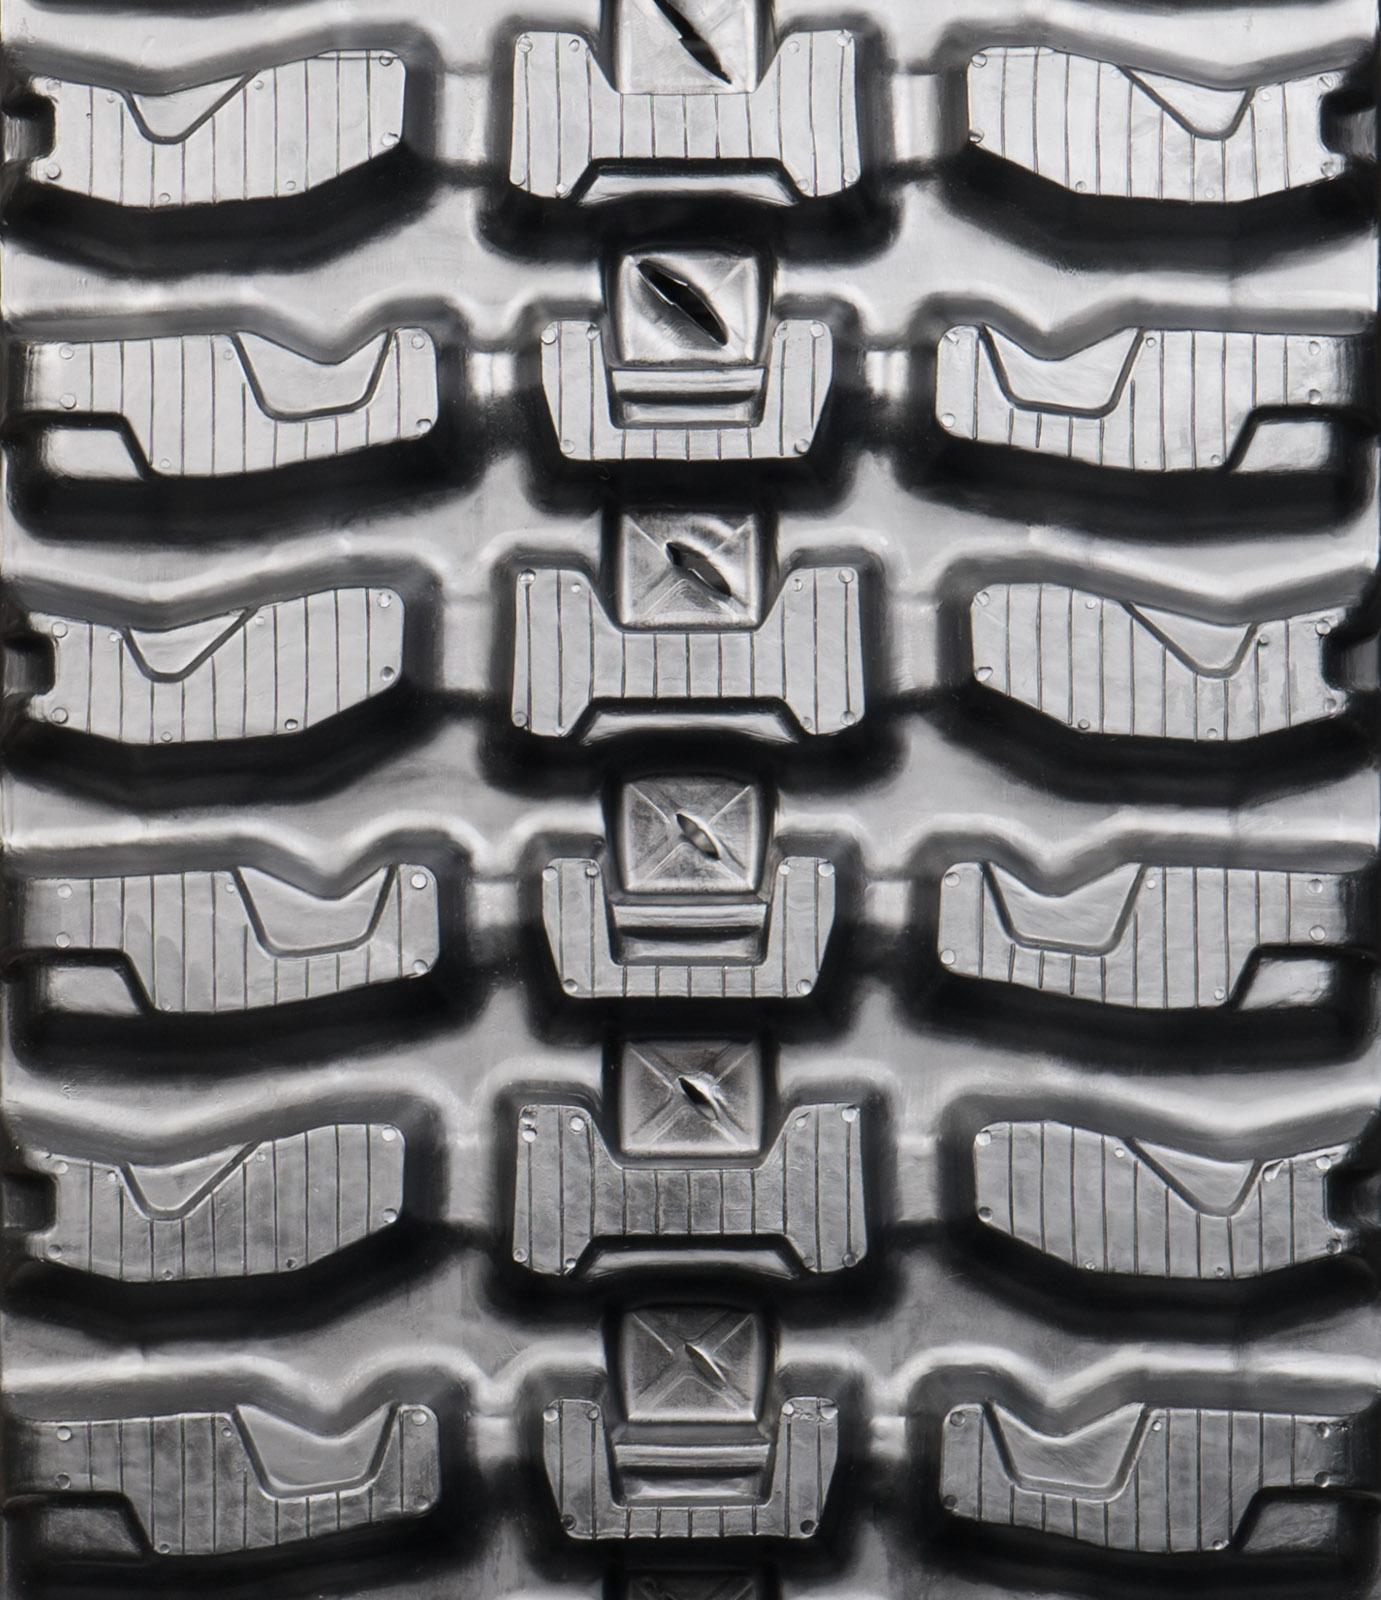 set of 2 18" heavy duty xt pattern rubber track (450x86bx52)